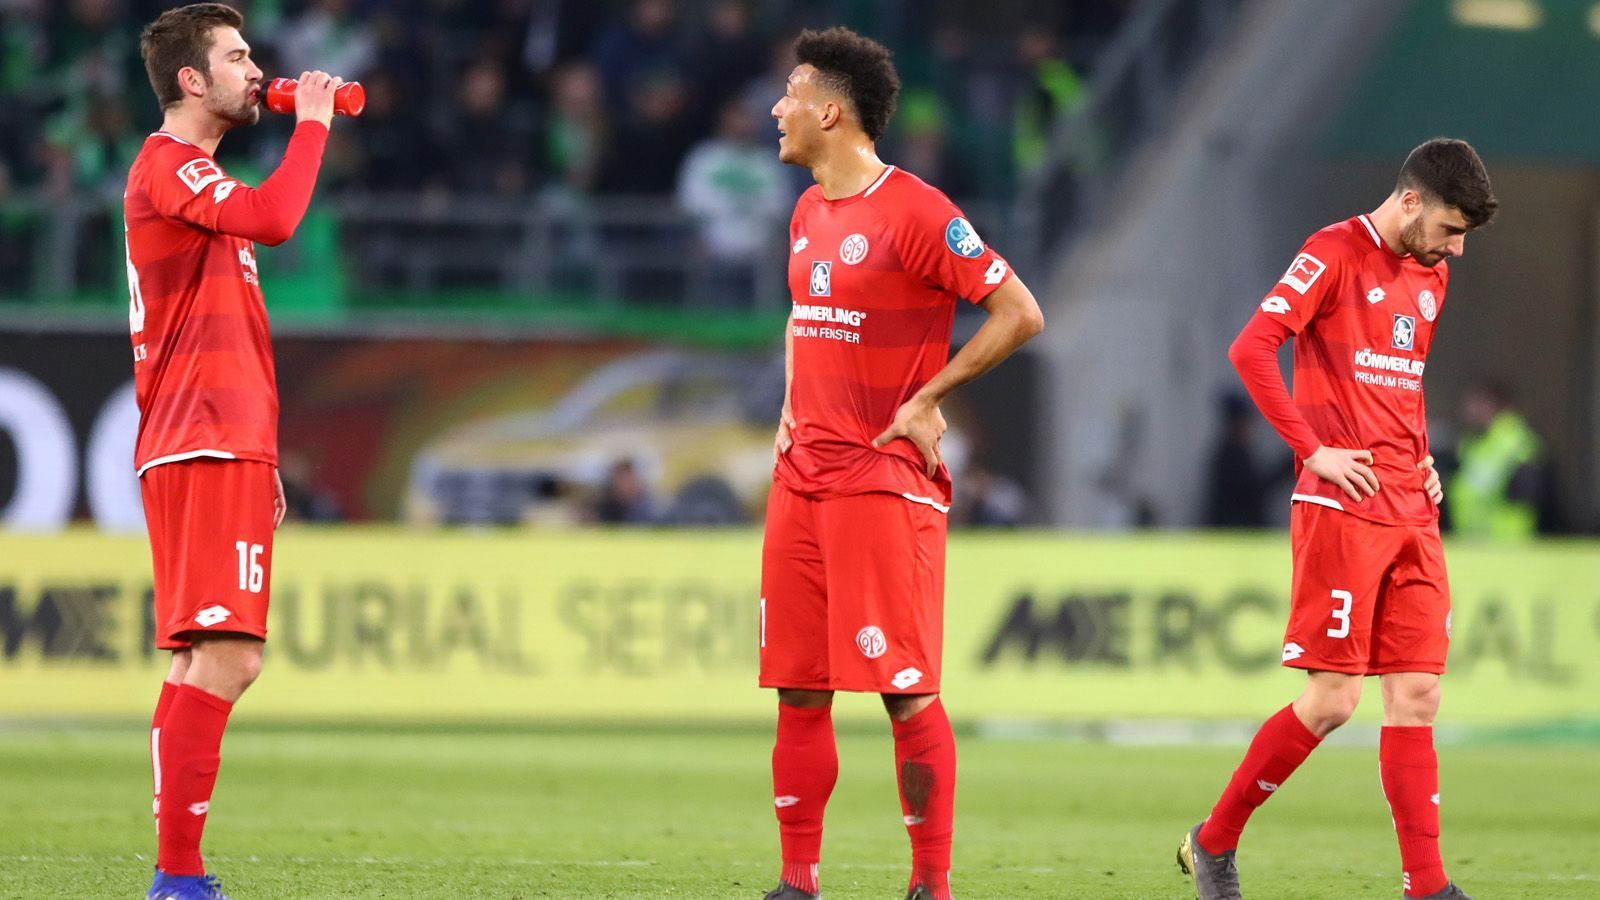 
                <strong>5. Platz: 1. FSV Mainz 05</strong><br>
                Die Rheinhessen befinden sich derzeit in einer gefährlichen Abwärtsspirale. Die letzten drei Partien haben die Mainzer allesamt deutlich verloren (1:5 gegen Leverkusen, 0:3 gegen Wolfsburg und Augsburg). Dazu hat man mit 14 Gegentoren in fünf Spielen die zweitmeisten Gegentreffer. Derzeit steht das Team von Sandro Schwarz mit 27 Punkten auf Tabellenplatz elf, am Samstag kommt der FC Schalke, die bis auf einen Punkt an Mainz heranrücken könnten. Auch Freiburg könnte bei einem Sieg zu Mainz aufschließen und Düsseldorf die Rheinhessen sogar überholen.   
              